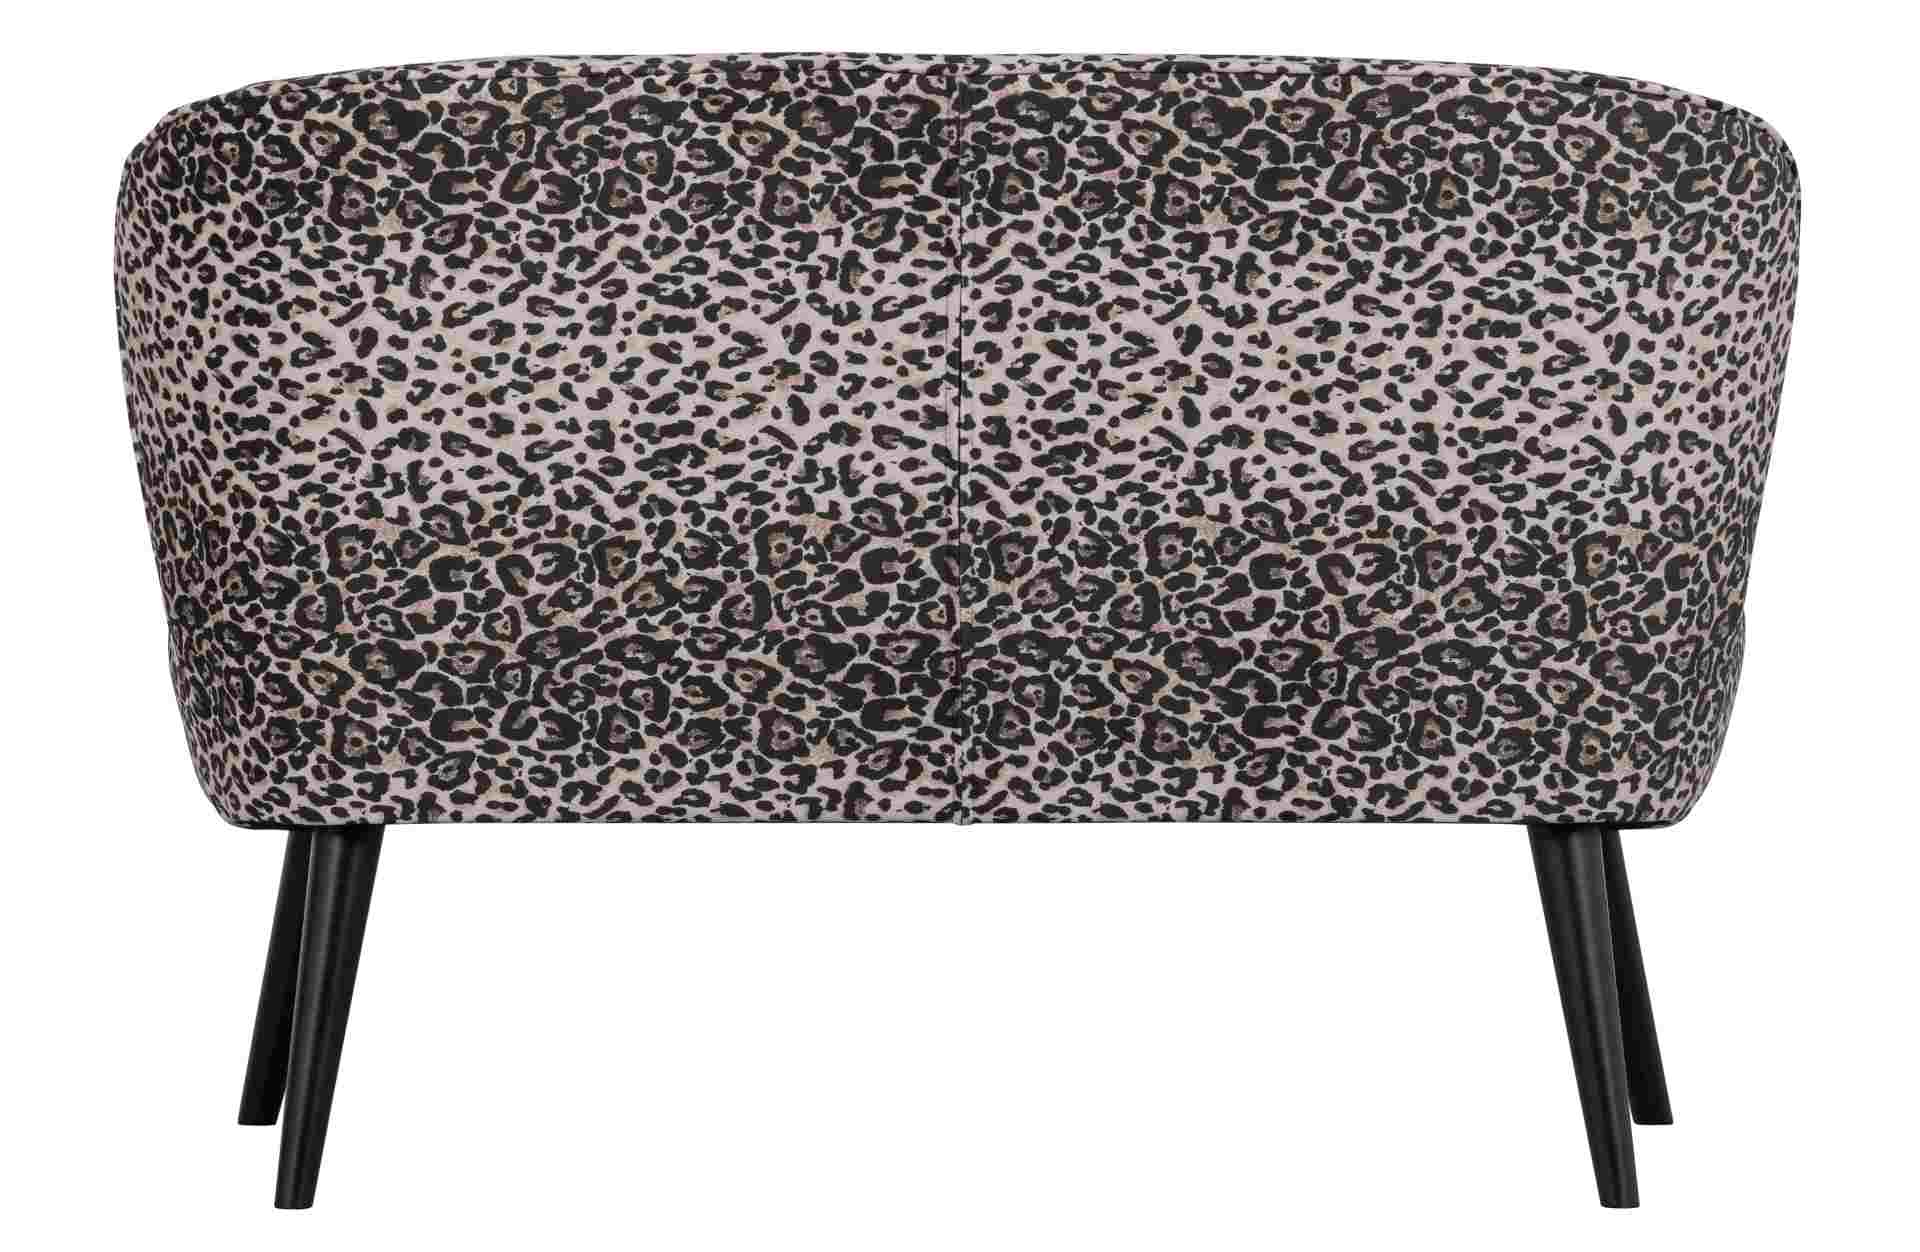 Das 2-Sitzer Sofa Megan überzeugt mit seinem klassischen Design. Gefertigt wurde es aus Kunststofffasern, welche einen einen Panther Look besitzen. Das Gestell ist aus Metall und hat eine schwarze Farbe. Die Sitzhöhe beträgt 45 cm.